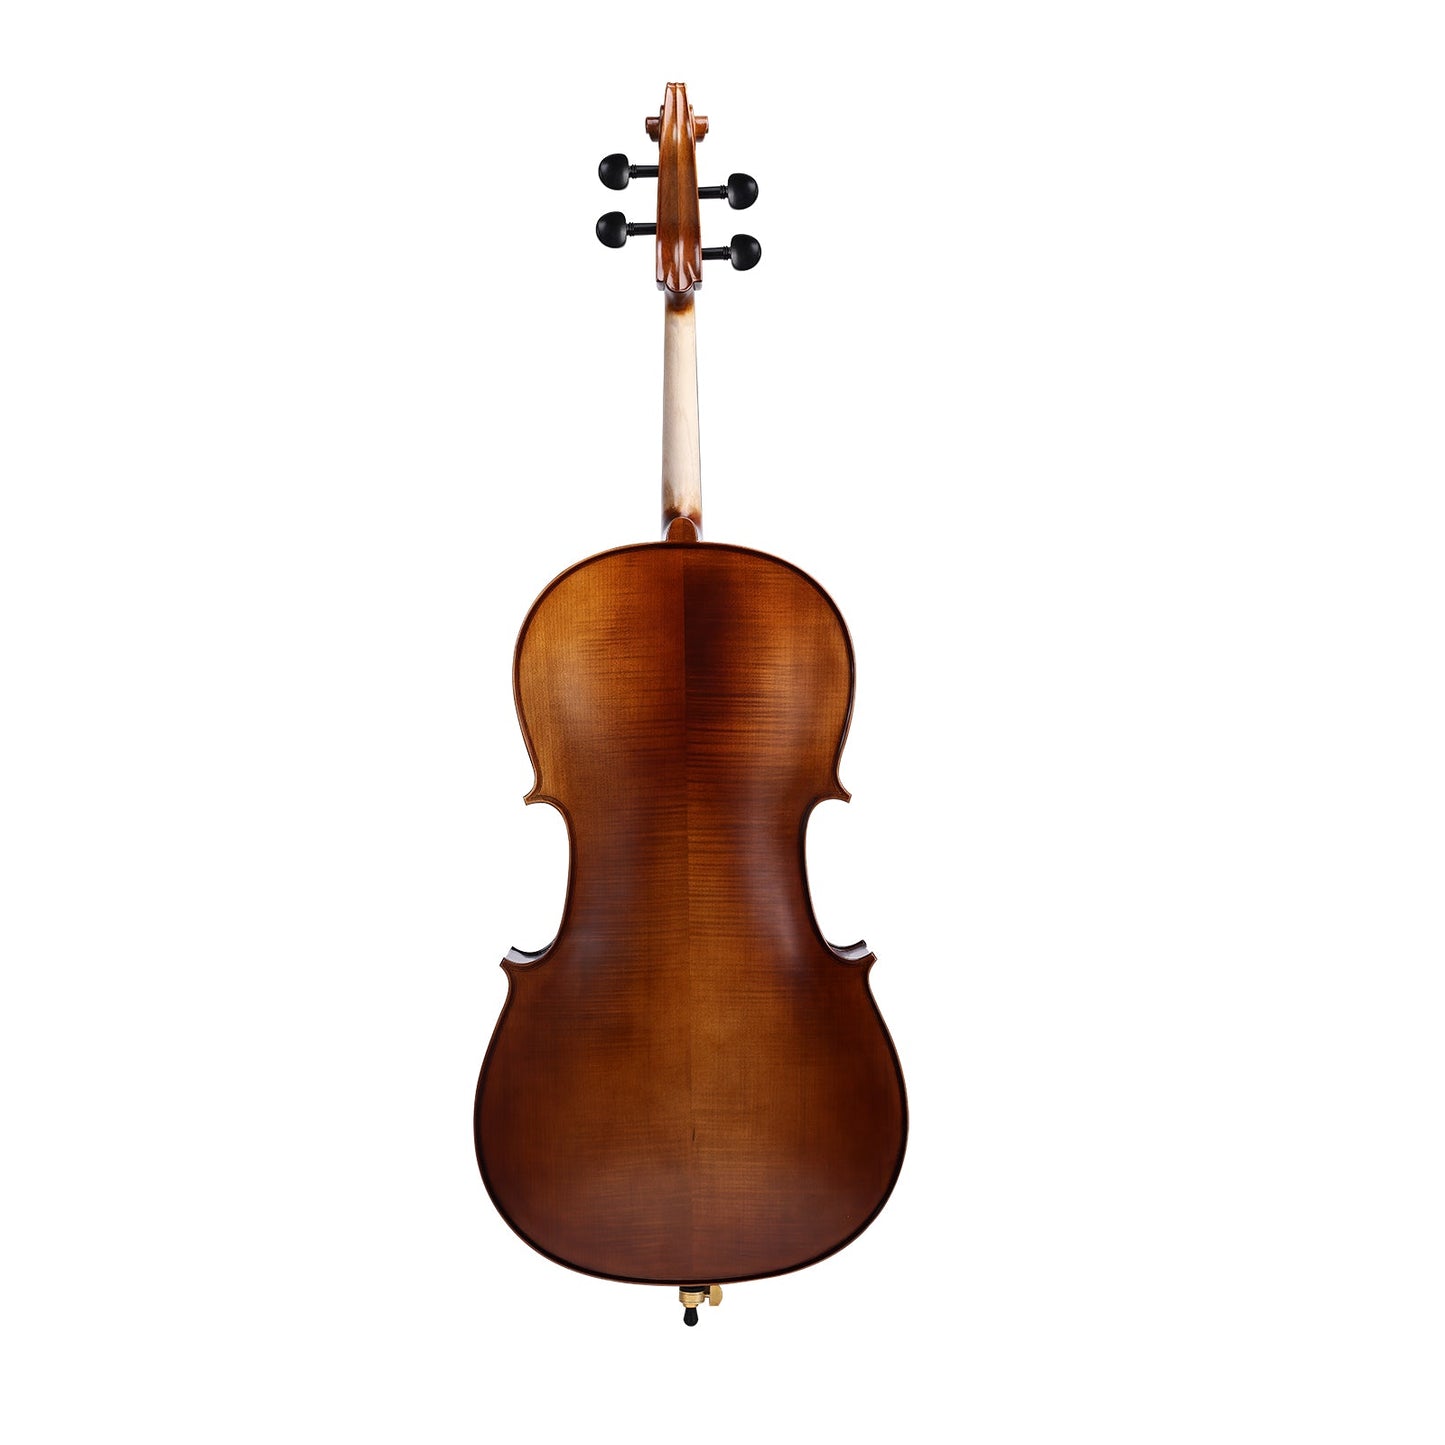 Axiom Concerto Series Cello - 4/4 Size